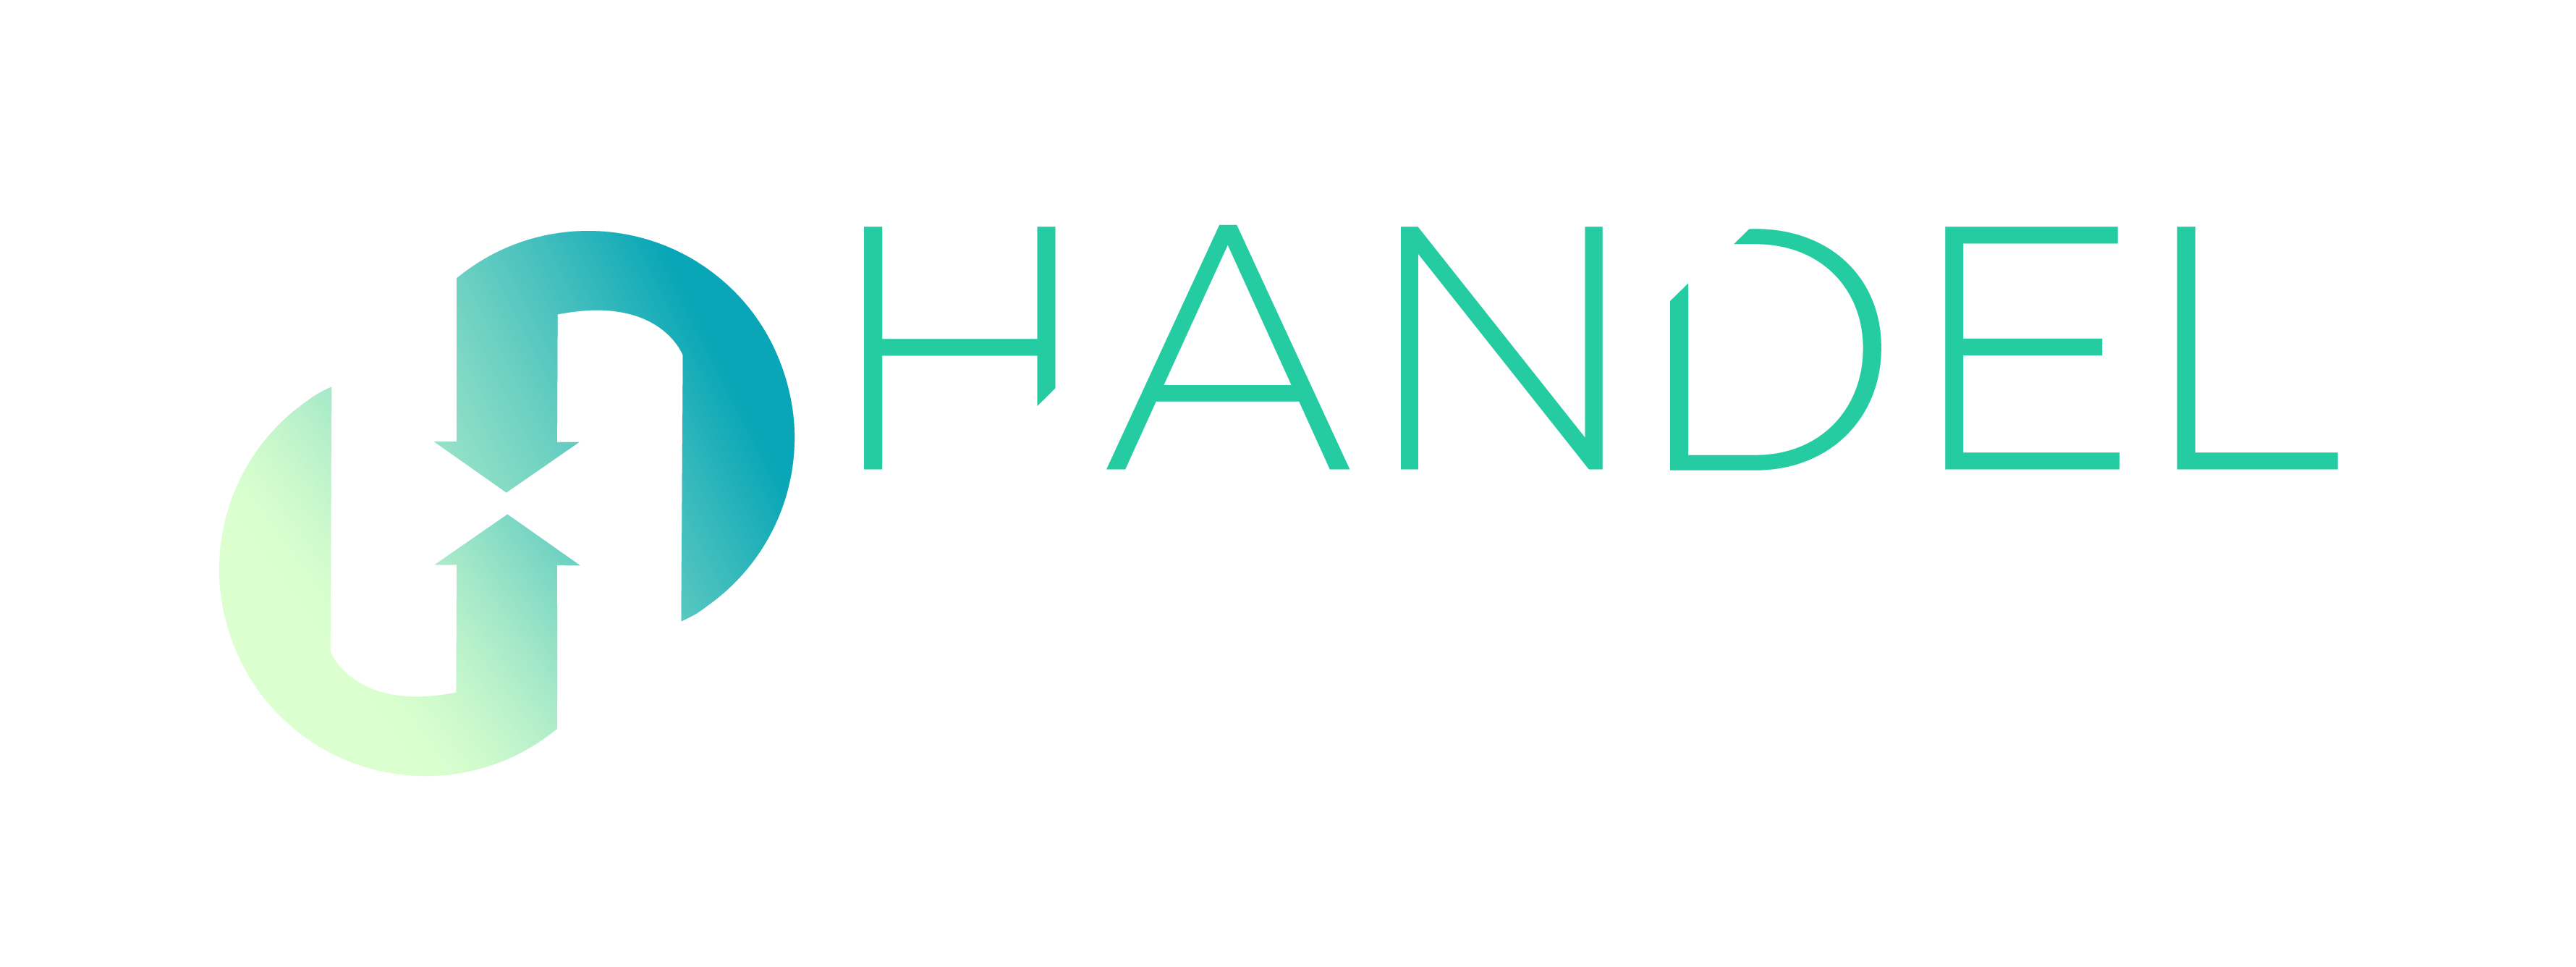 Logo HandelBay